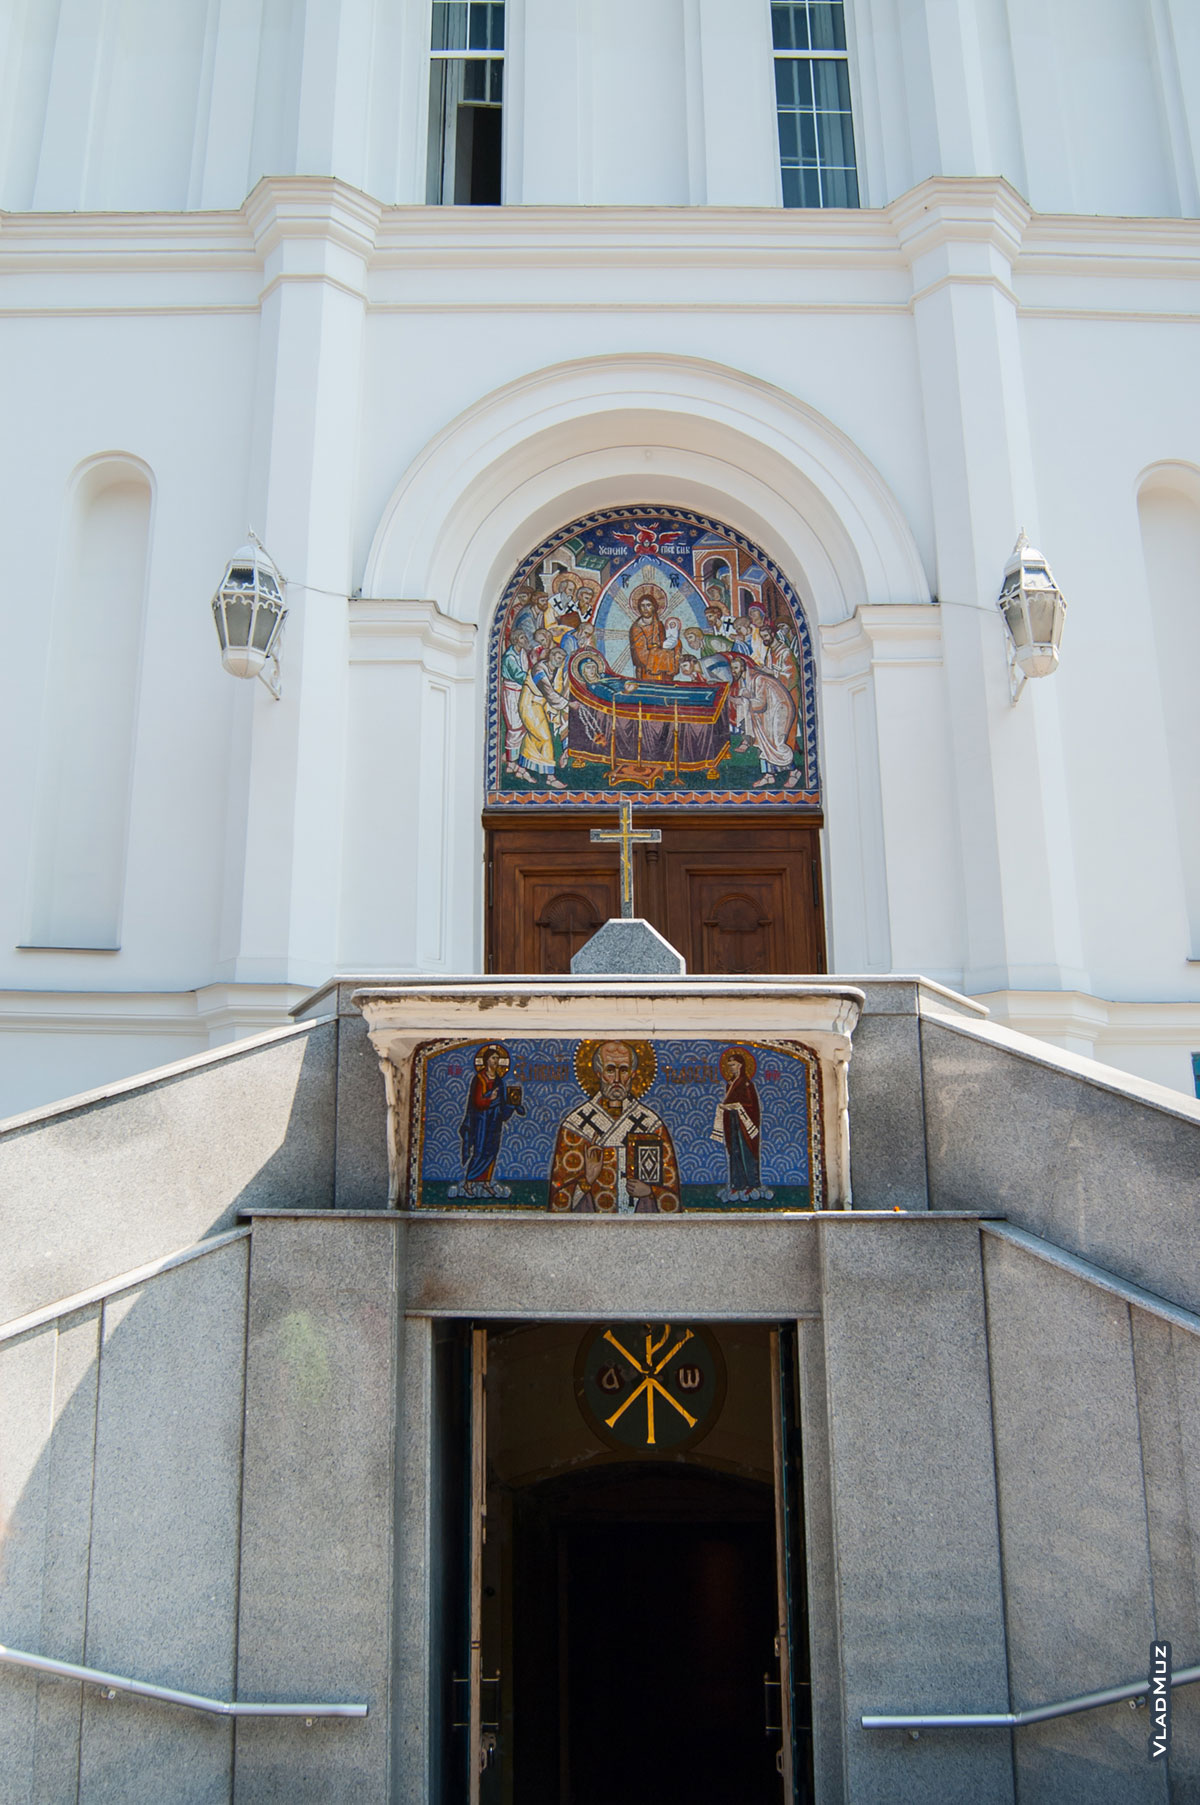 Фото г. Одессы: мозаика (или фрески) над входами в Свято-Успенский кафедральный собор